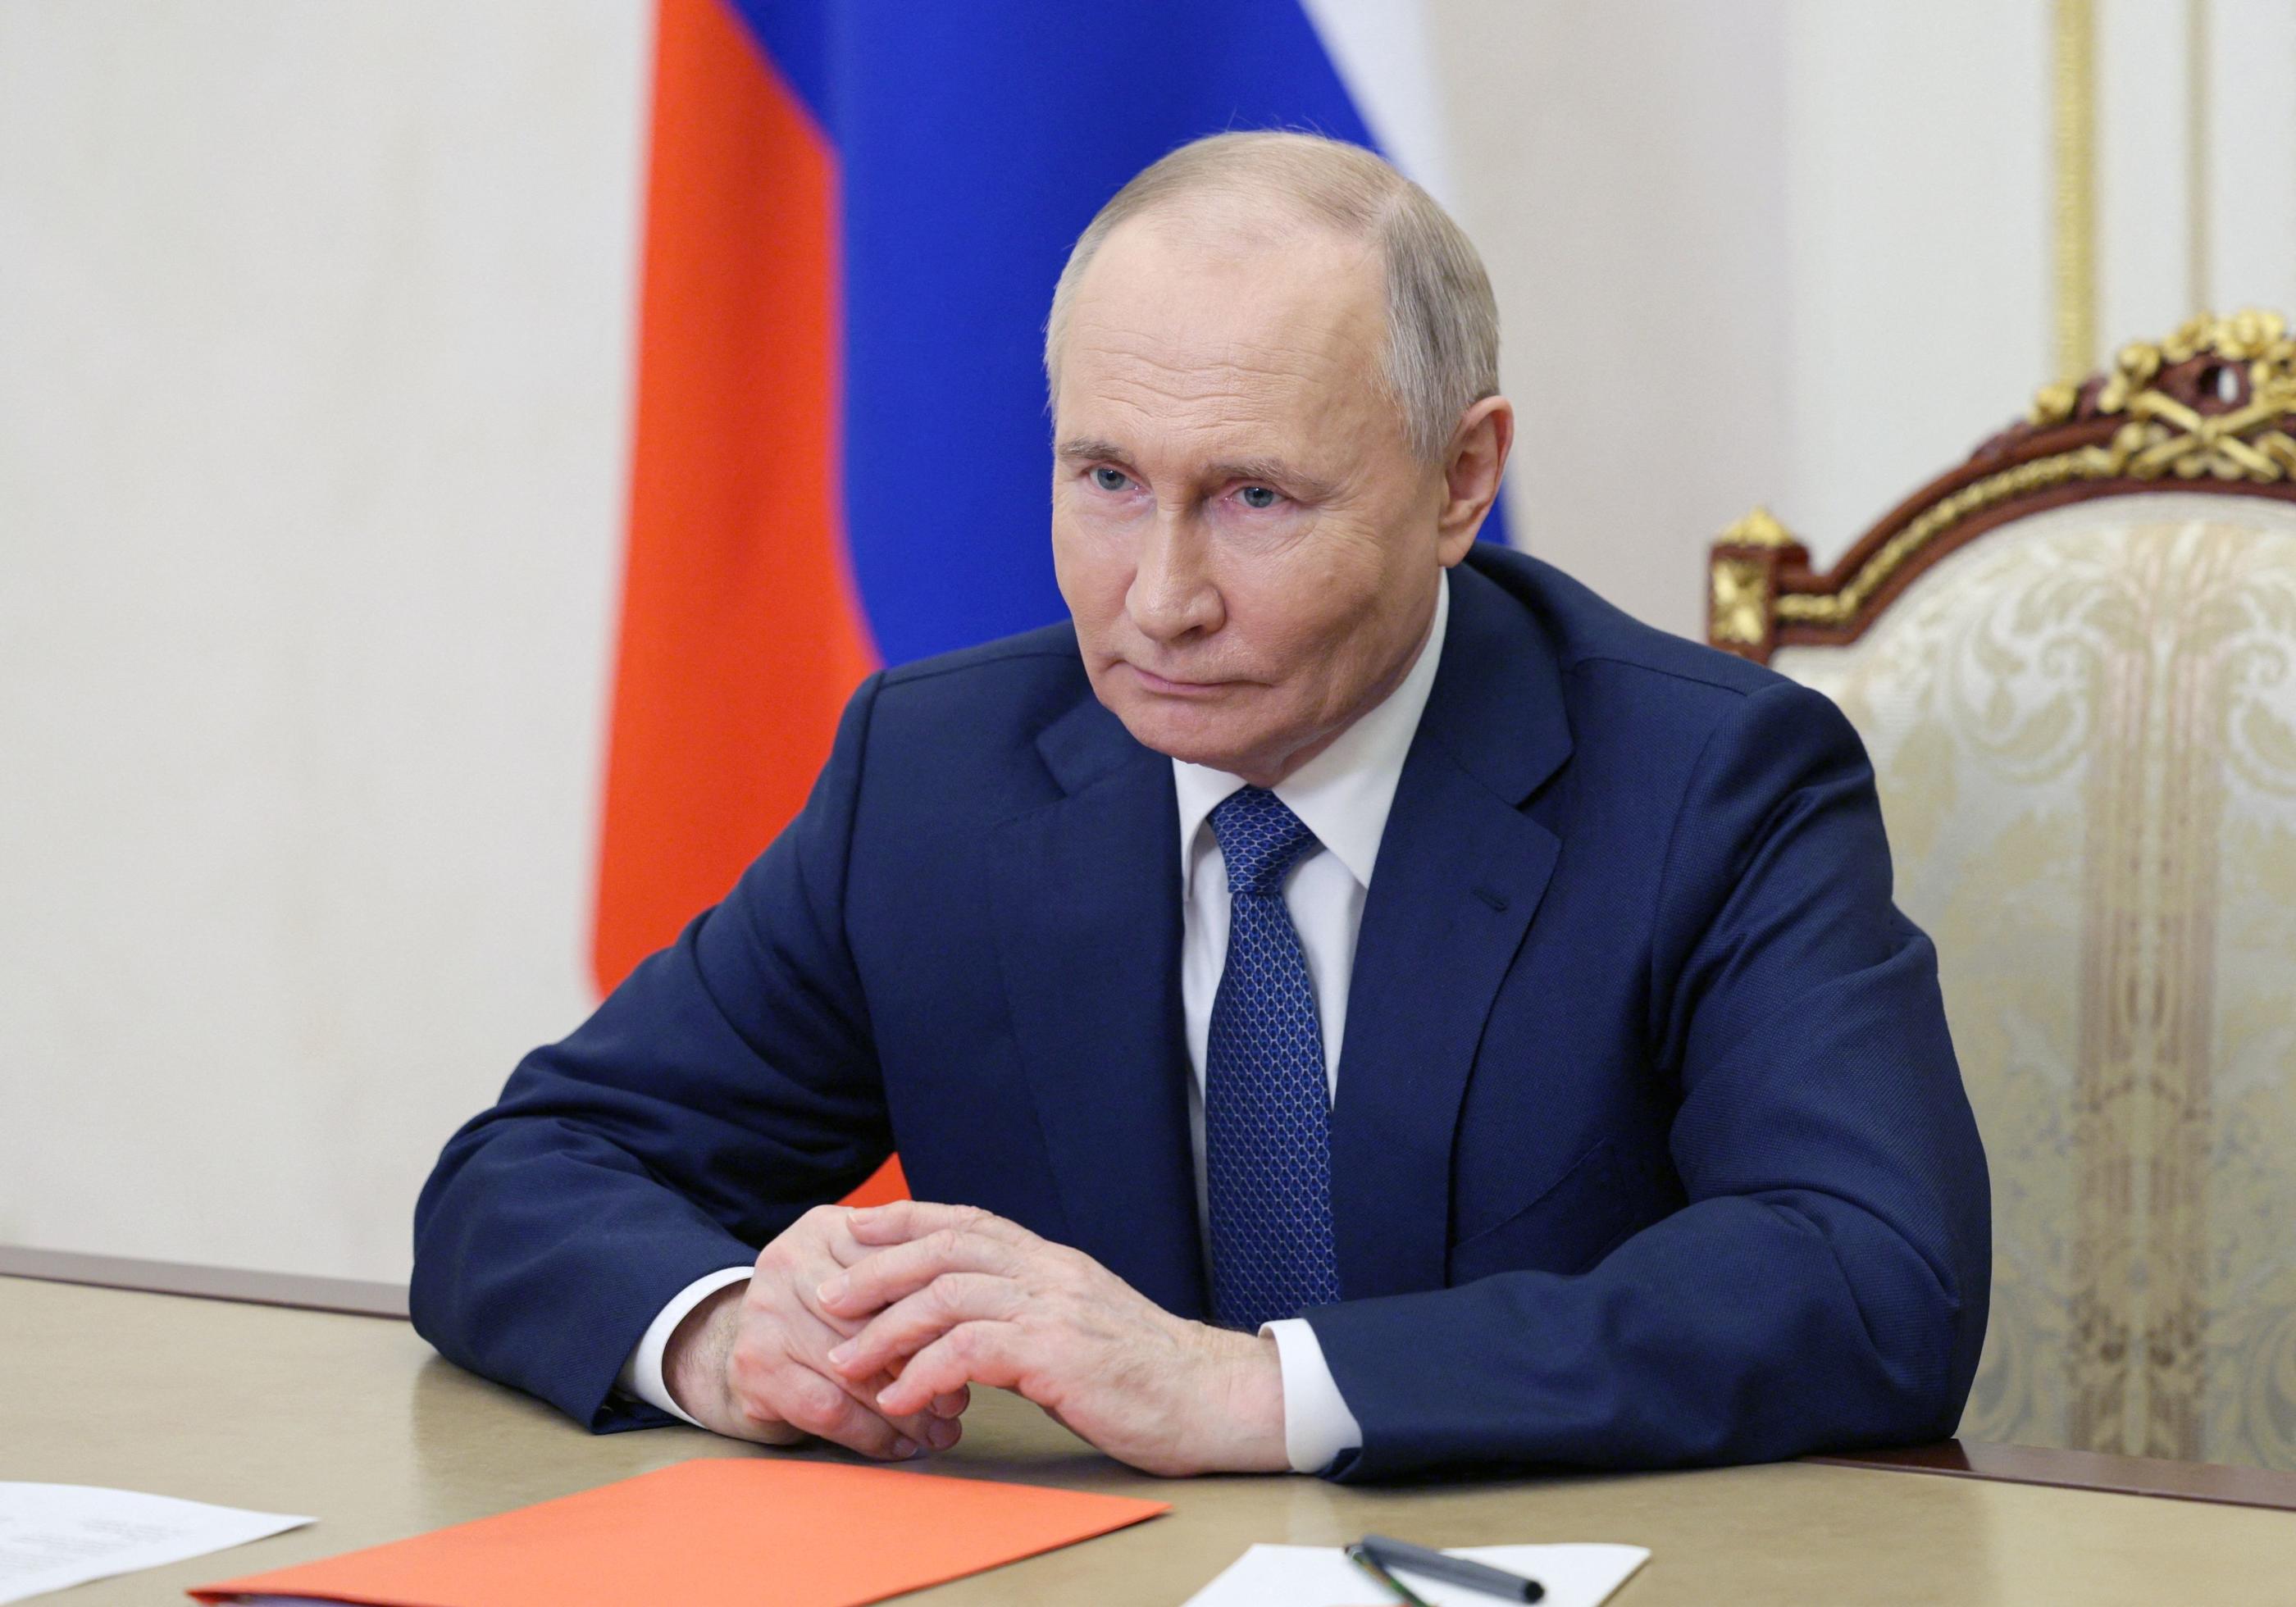 Le président russe Vladimir Poutine avait attribué la responsabilité de l'échec des négociations à Kiev et à ses alliés. AFP / Alexei Babushkin